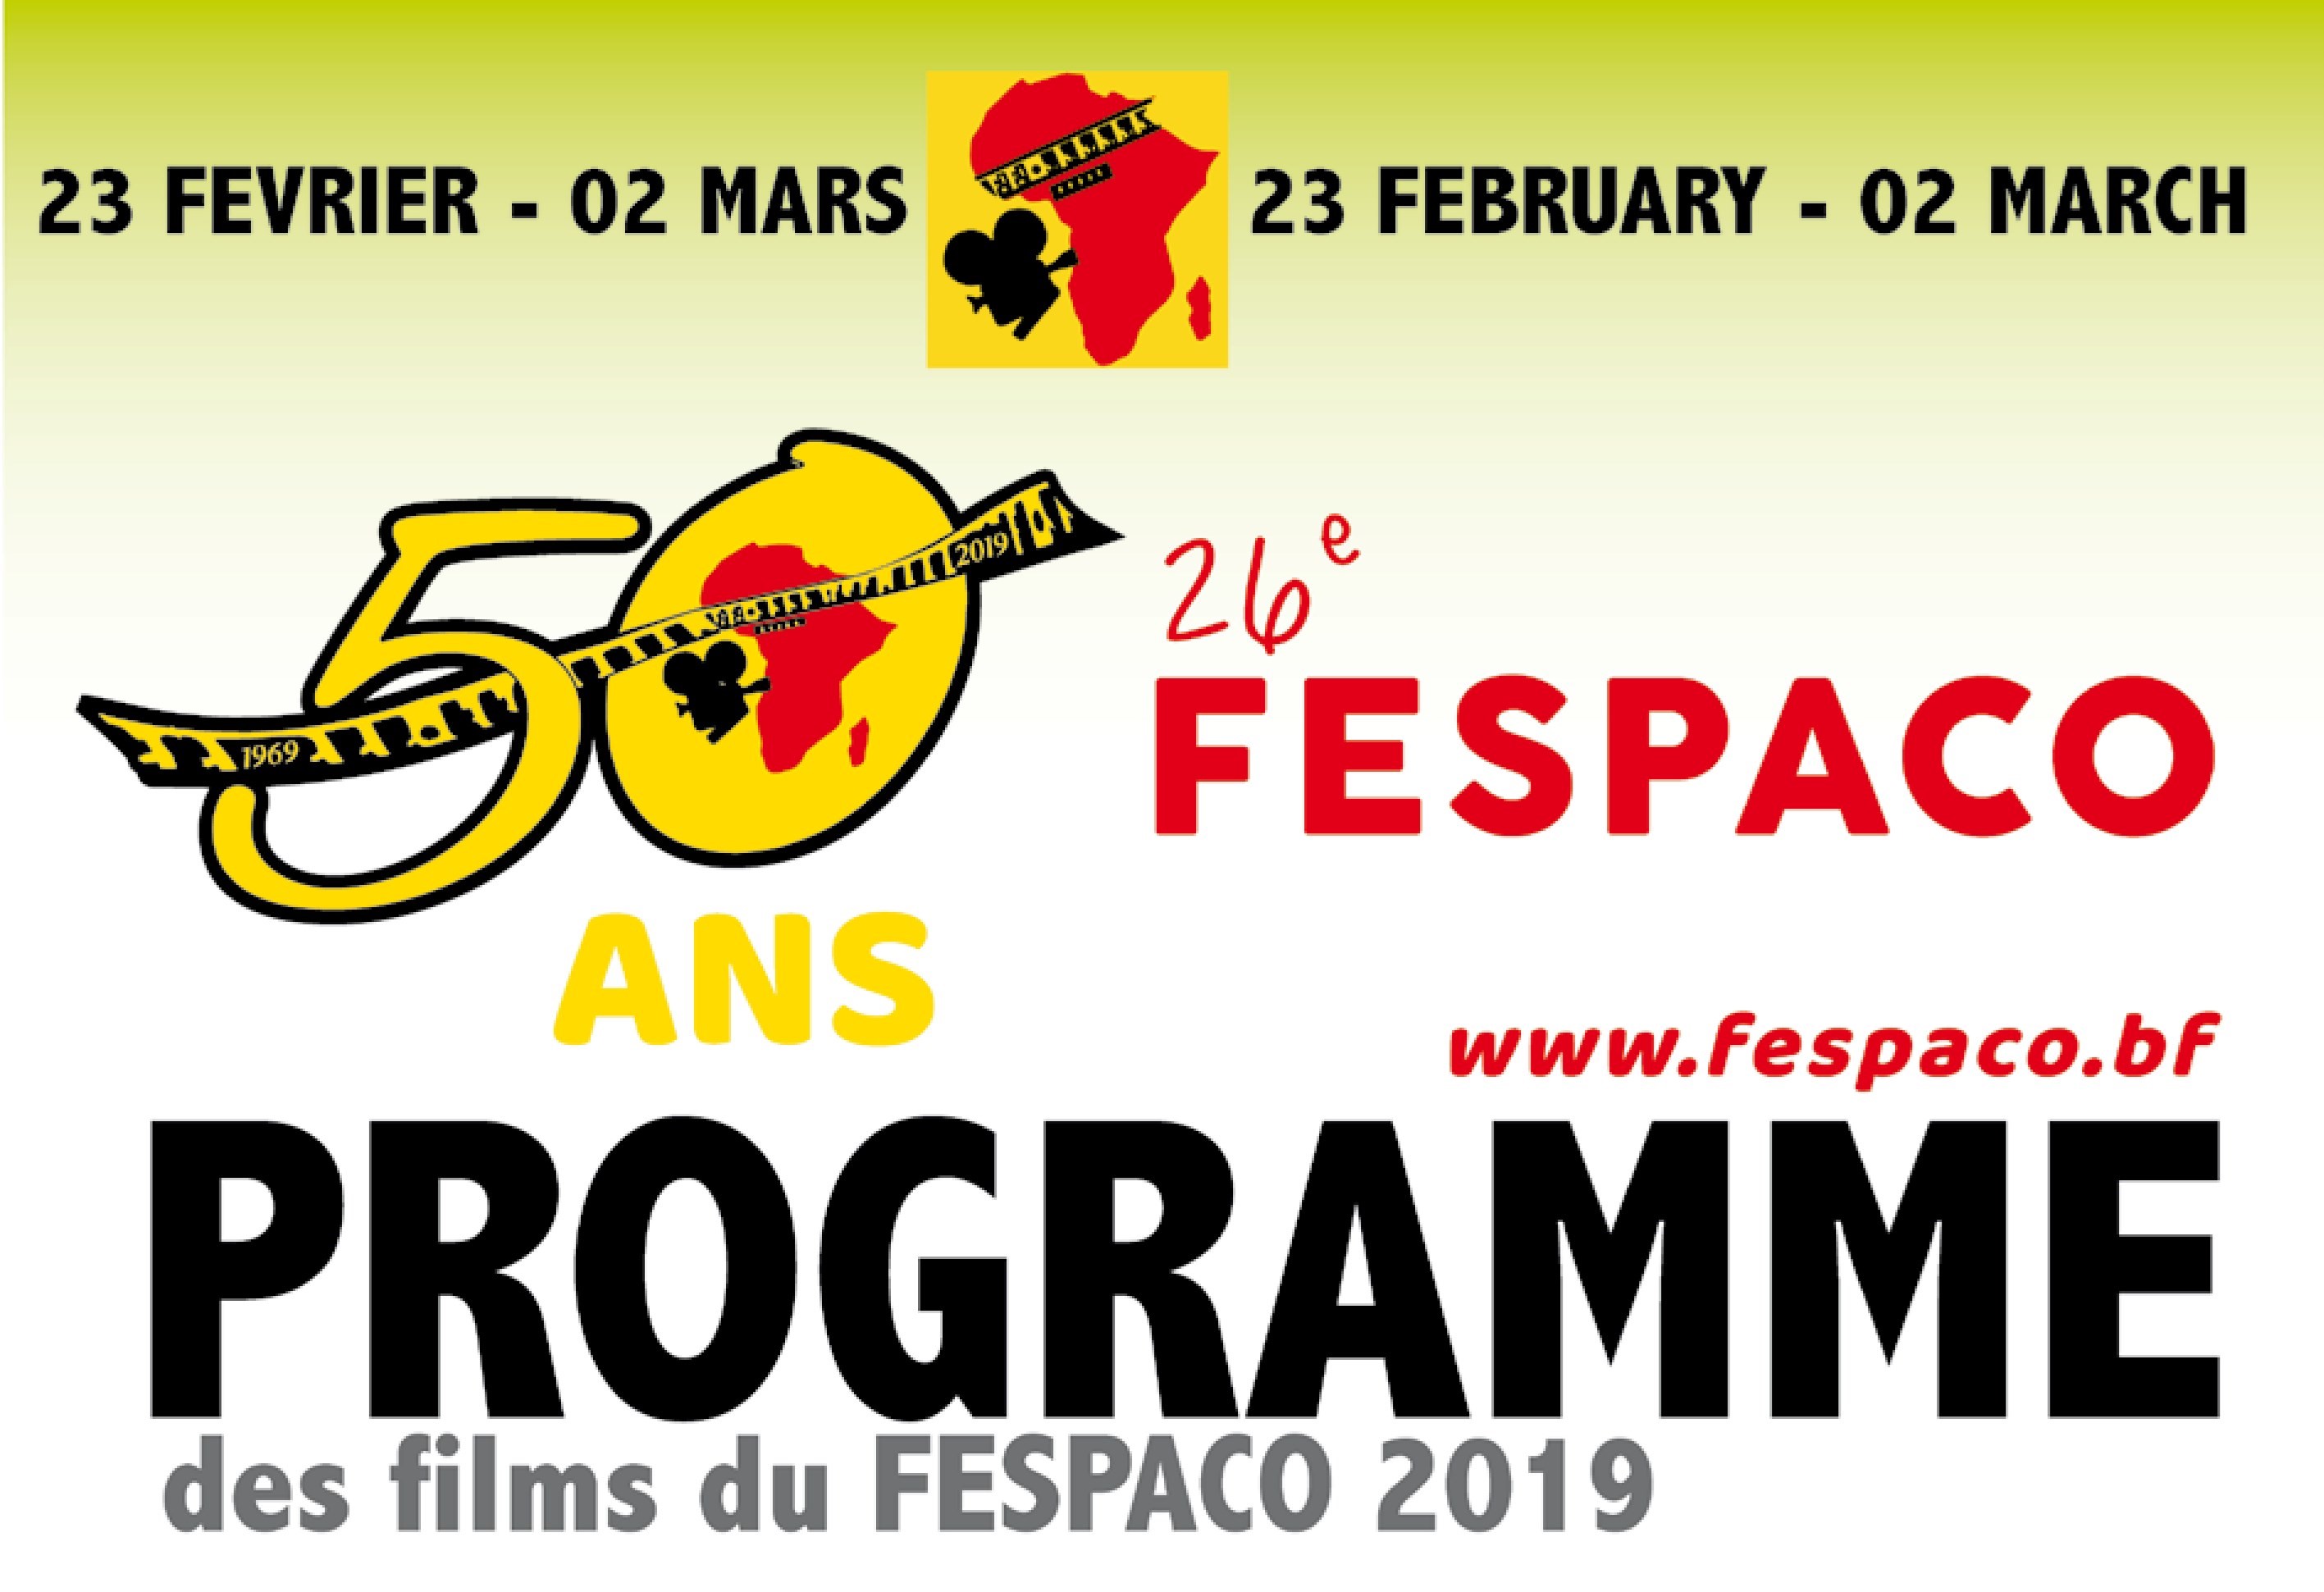 Fespaco 2019 : Programme de projection des films du samedi 02 mars 2019